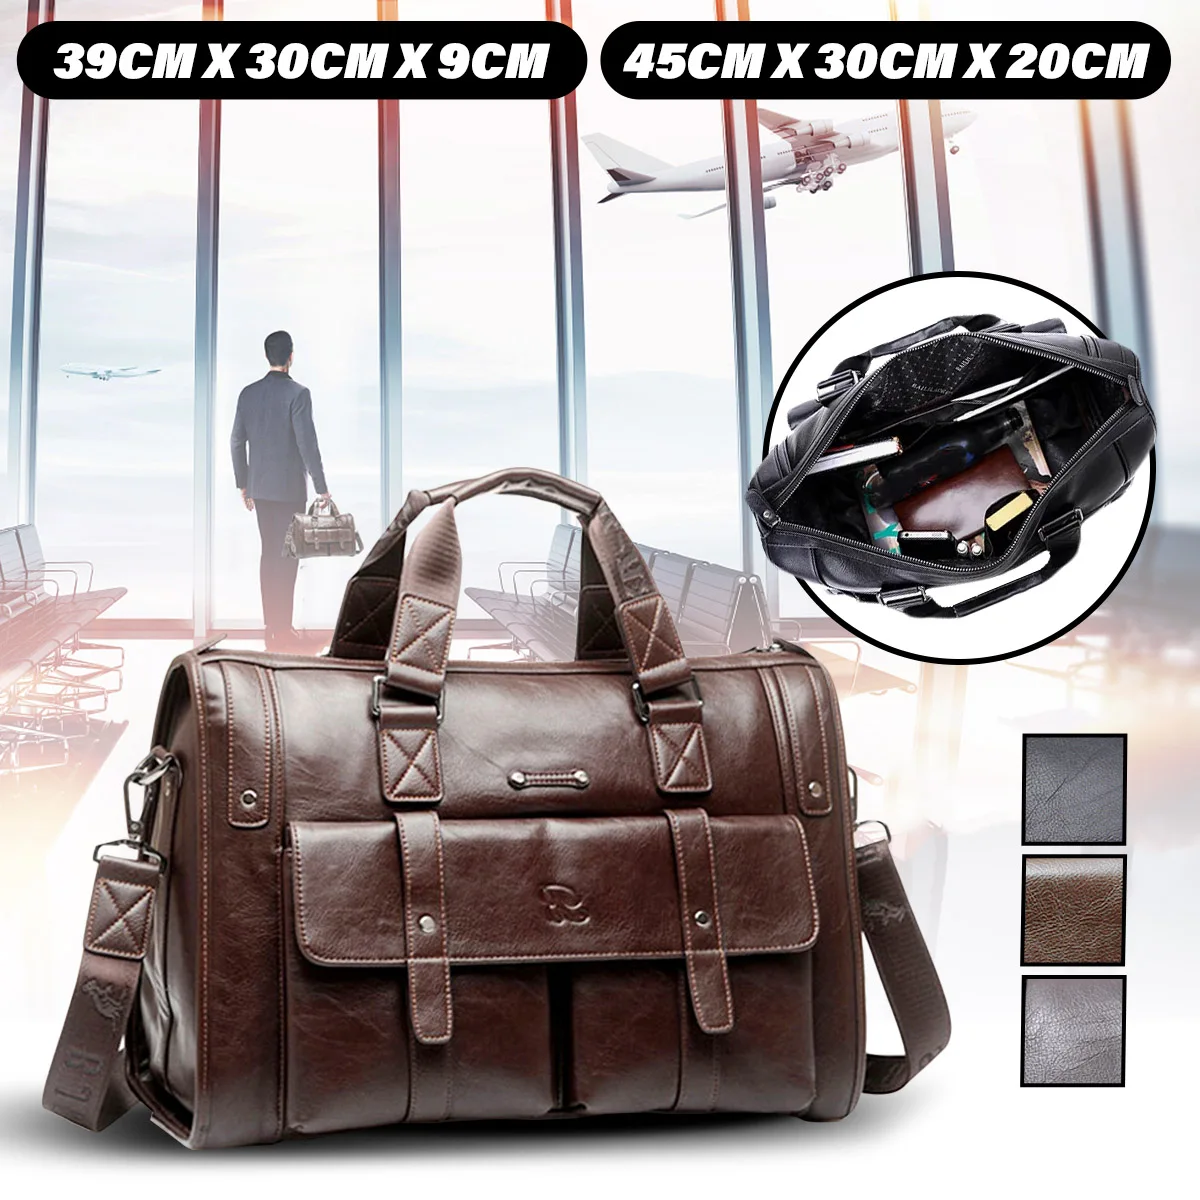 2018 New Business Men's Leather Handbag Briefcase Bag Laptop Shoulder Bags 